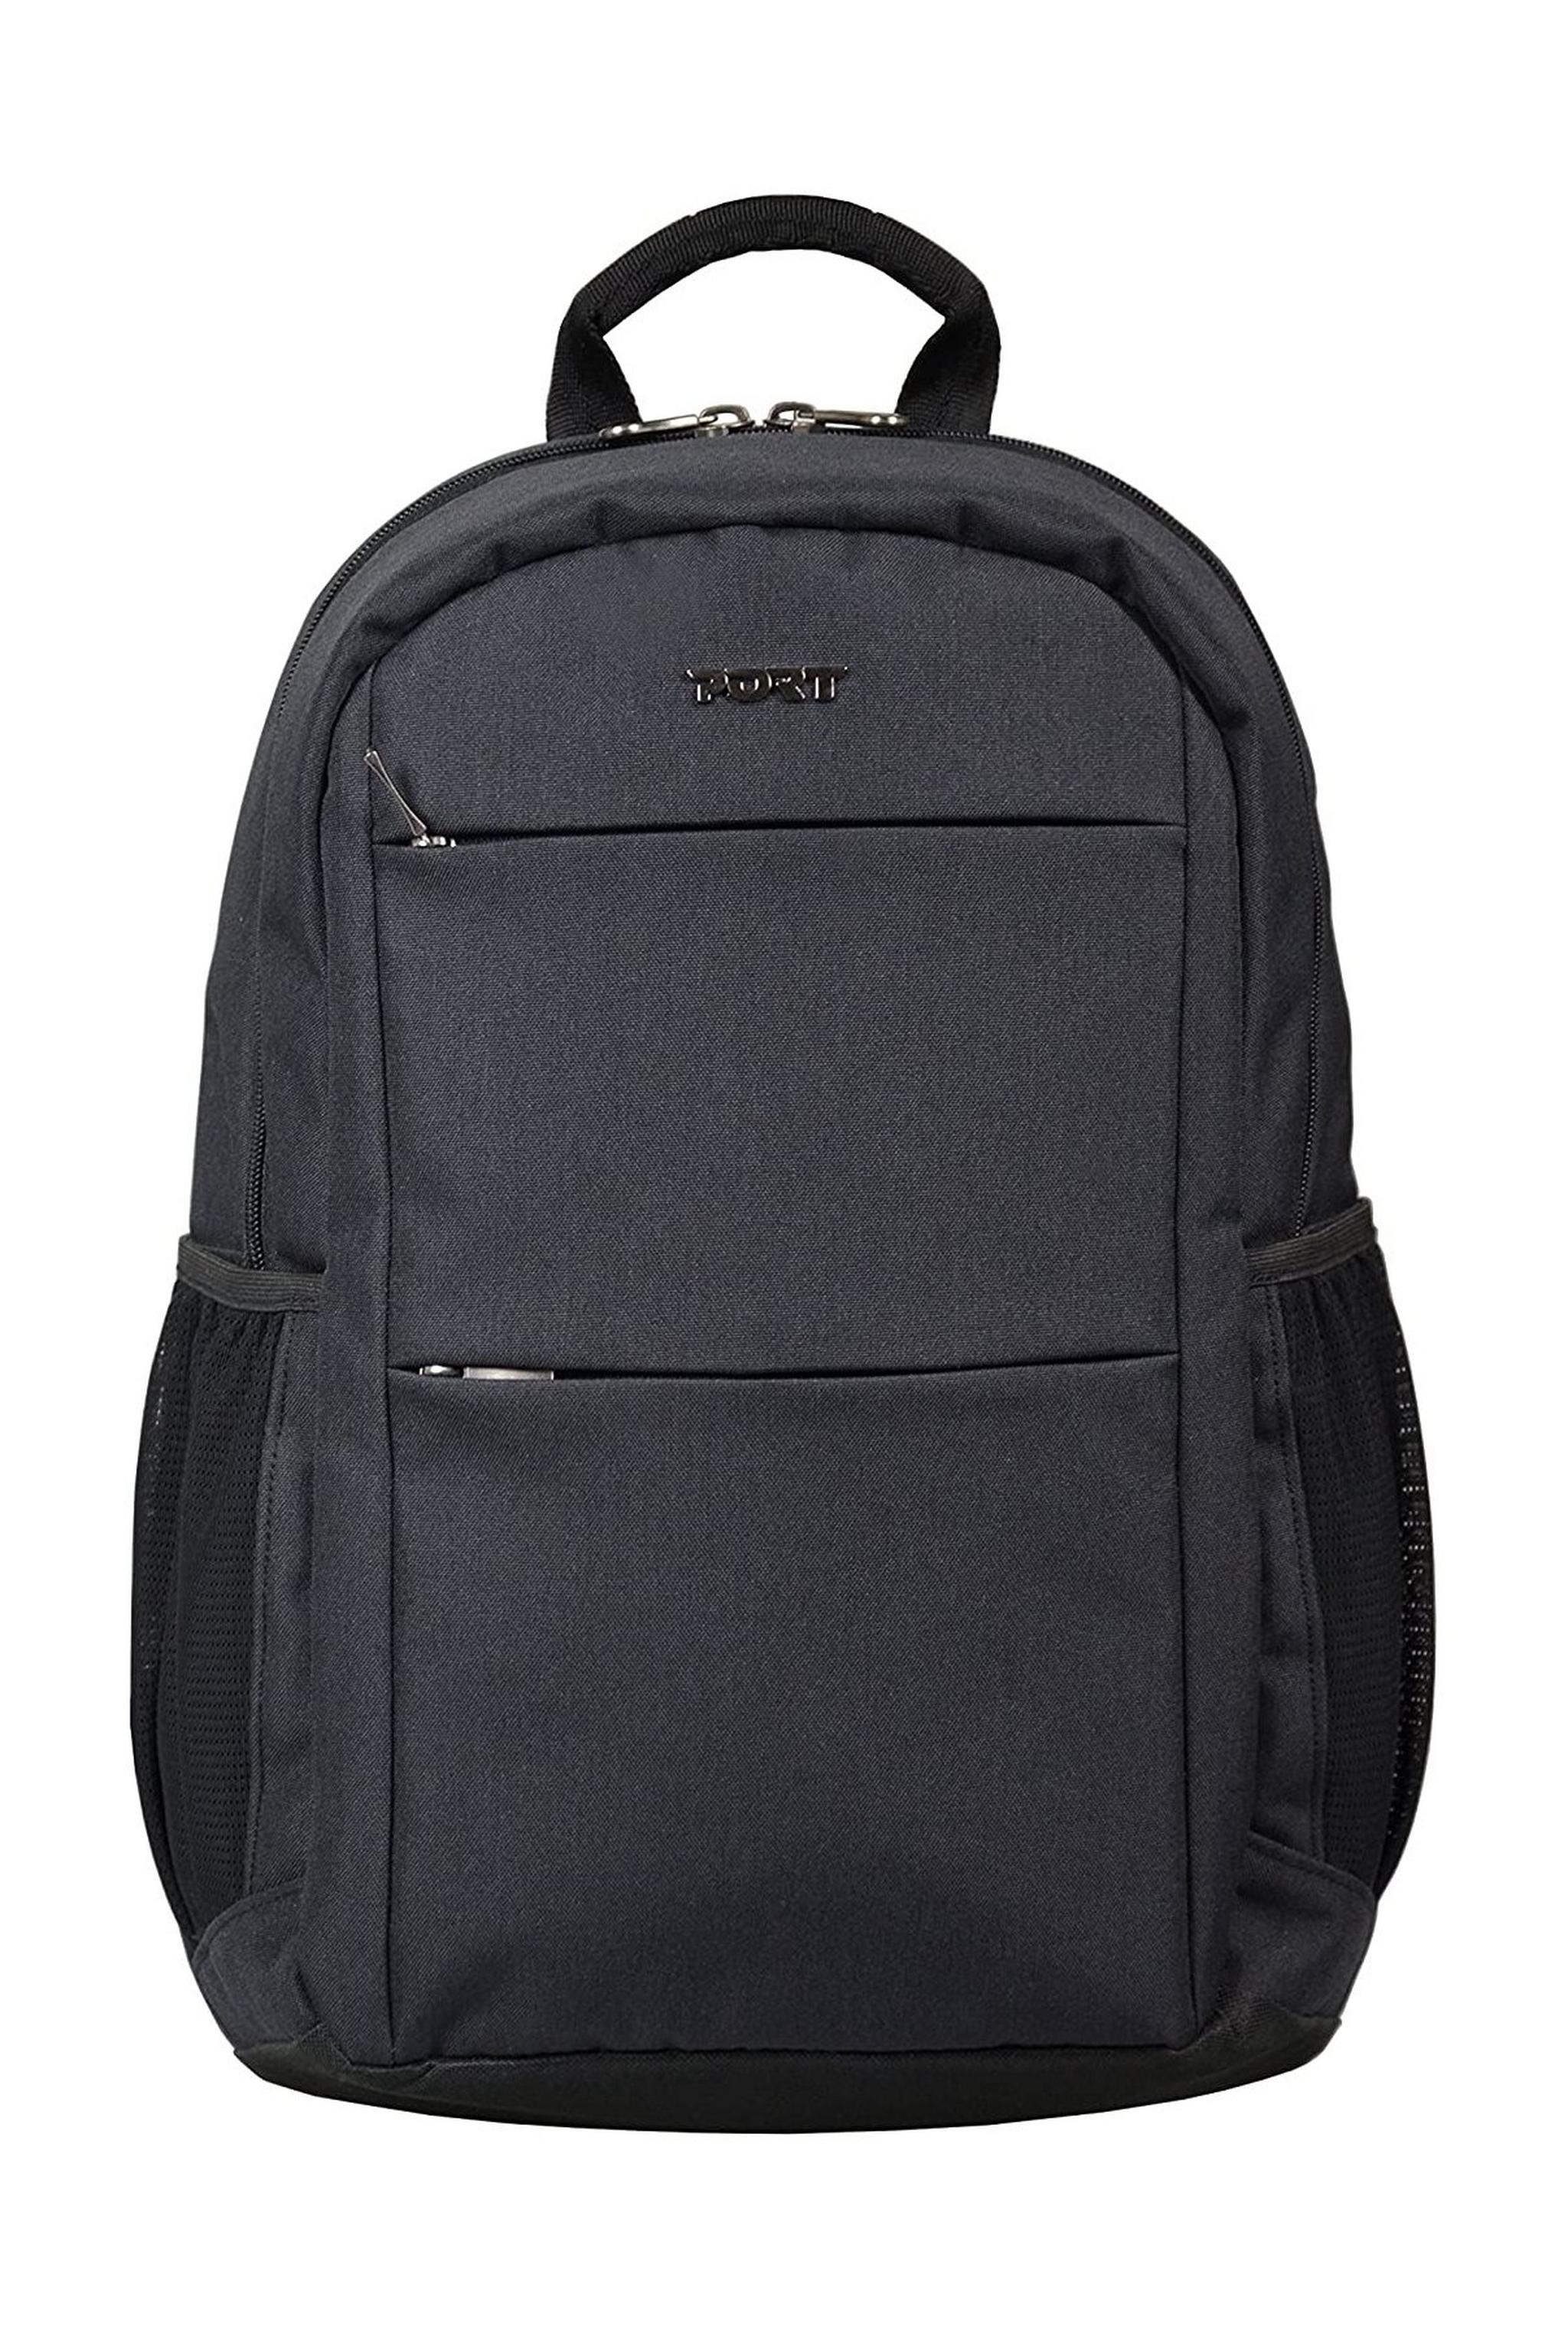 Port Designs Sydney 15.6-Inch Backpack - Black